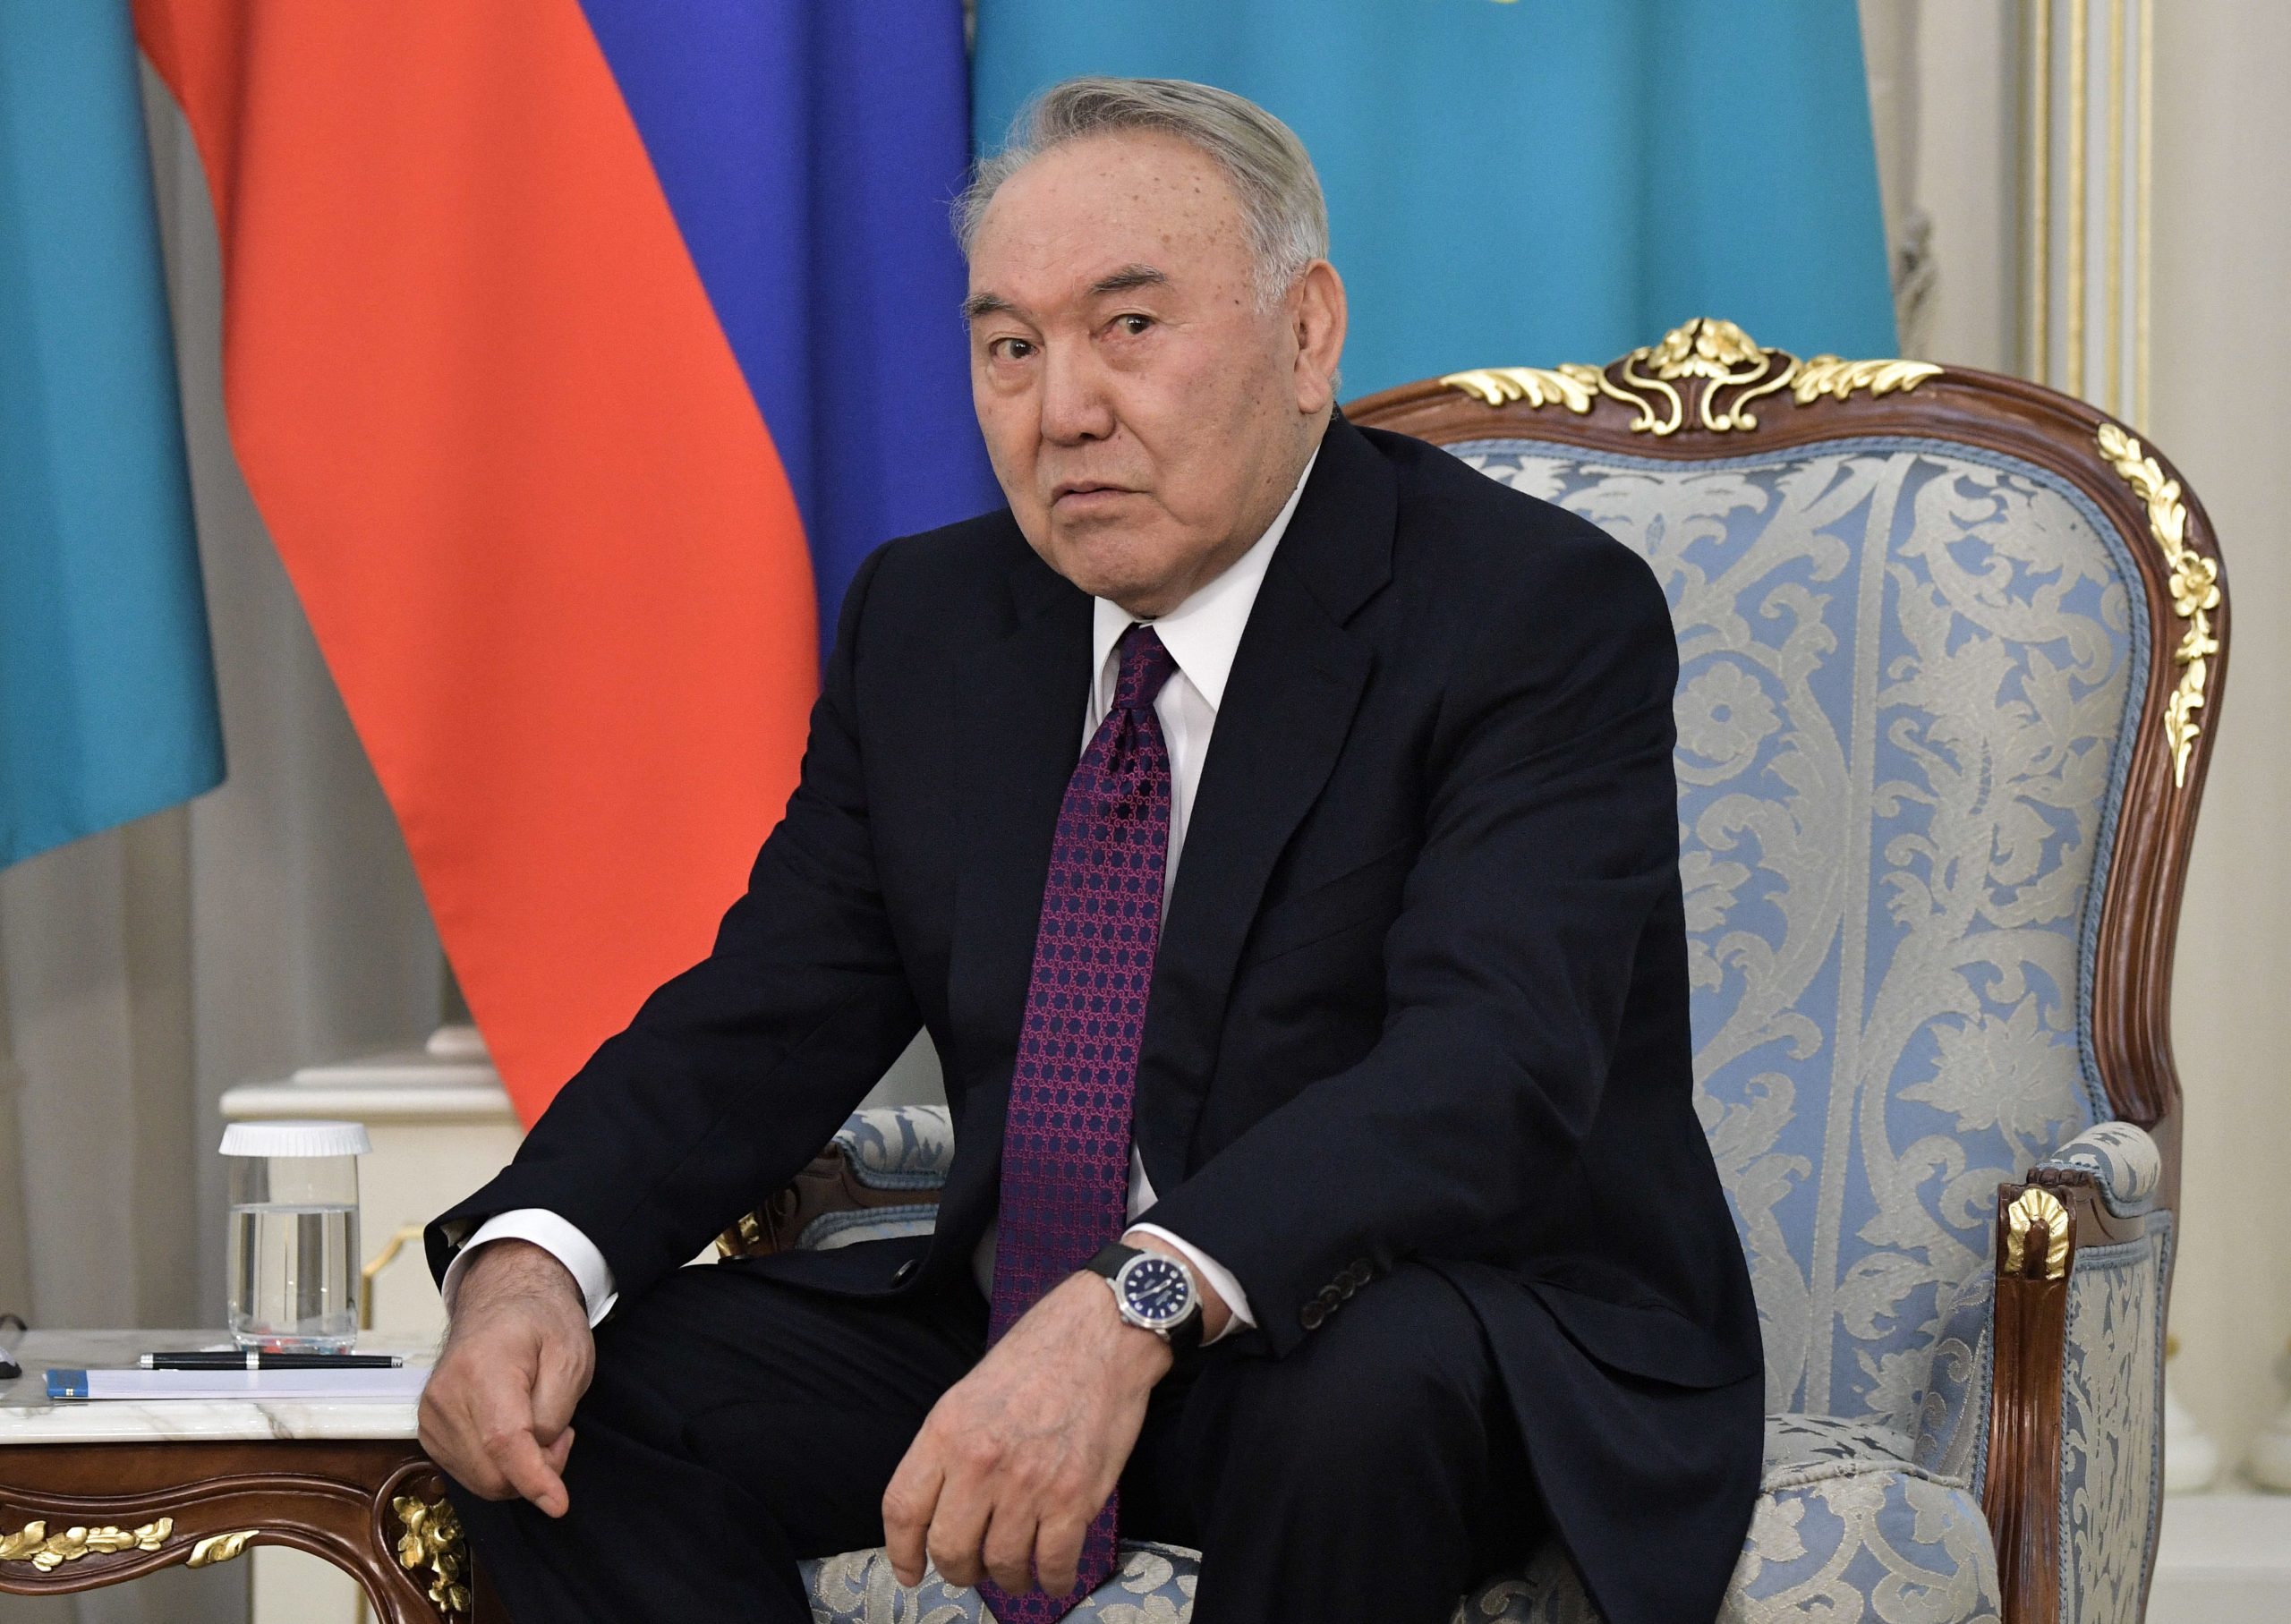 Nursultan Nazarbayev Nursultan Nazarbajev